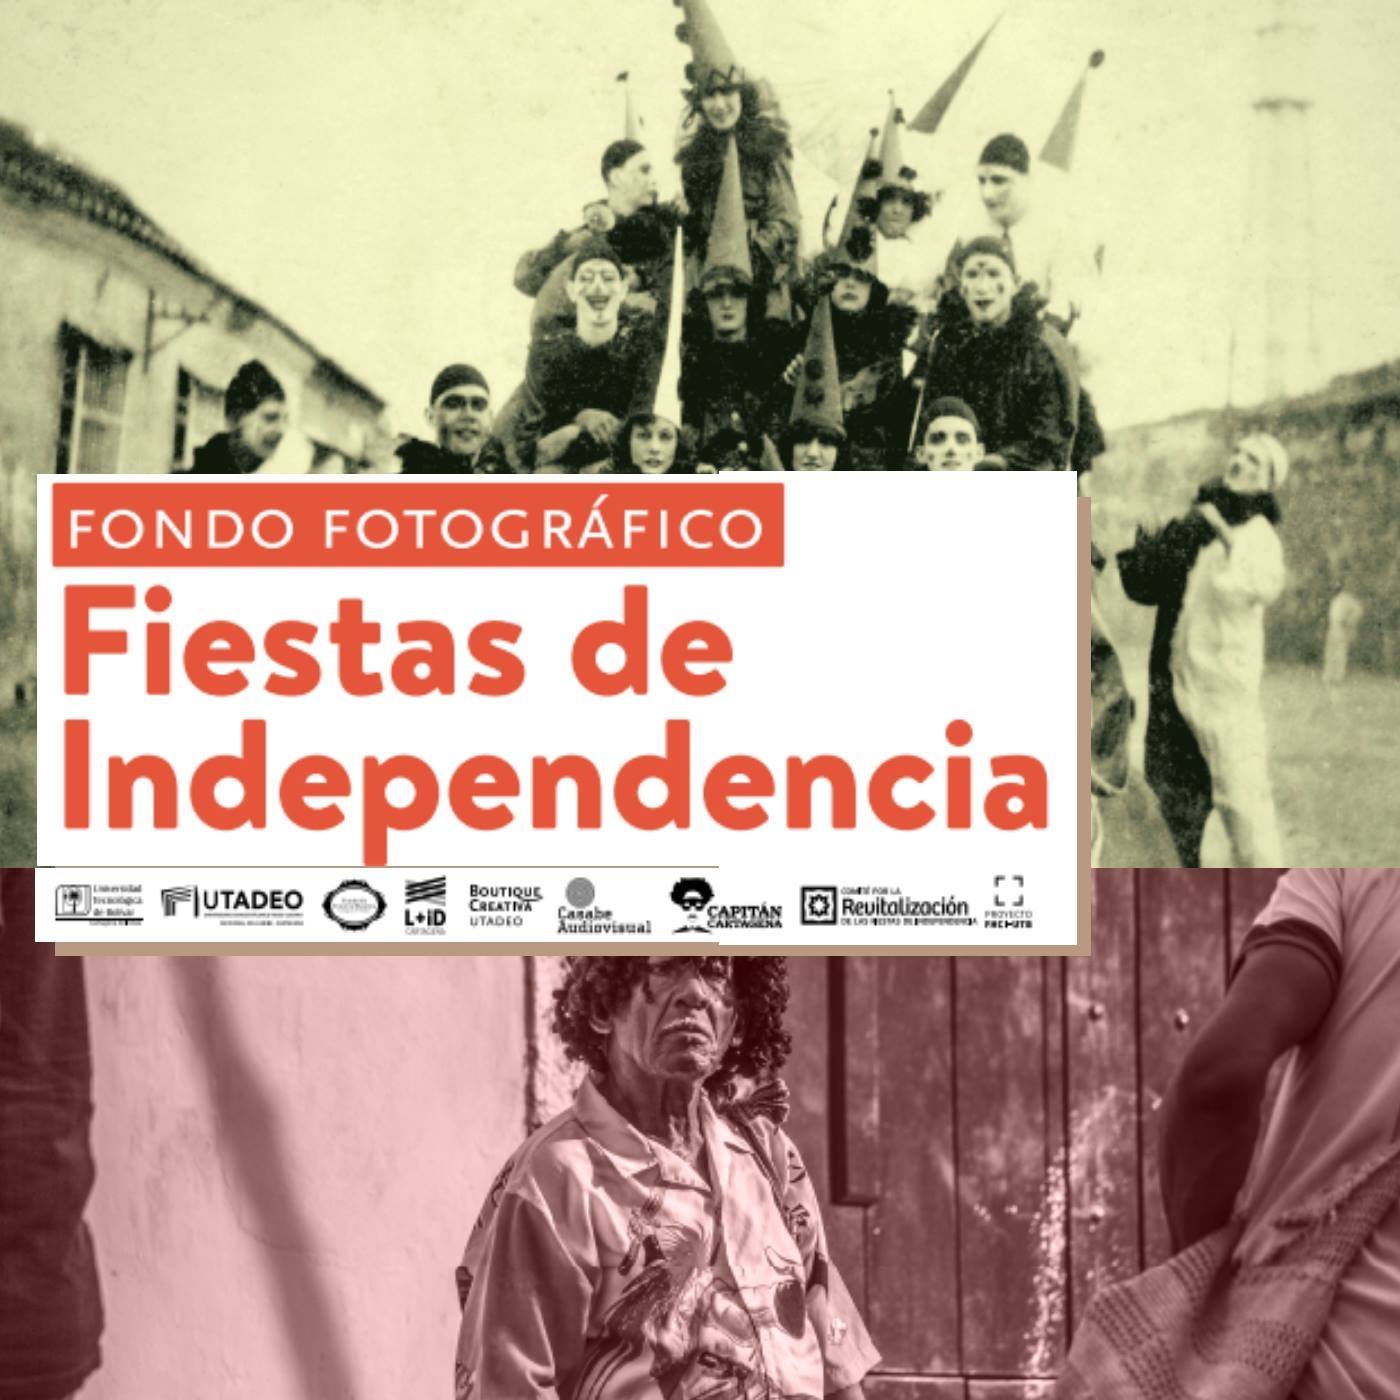 Lanzamiento “Fondo fotográfico Fiestas de Independencia” Caribe en Los Andes